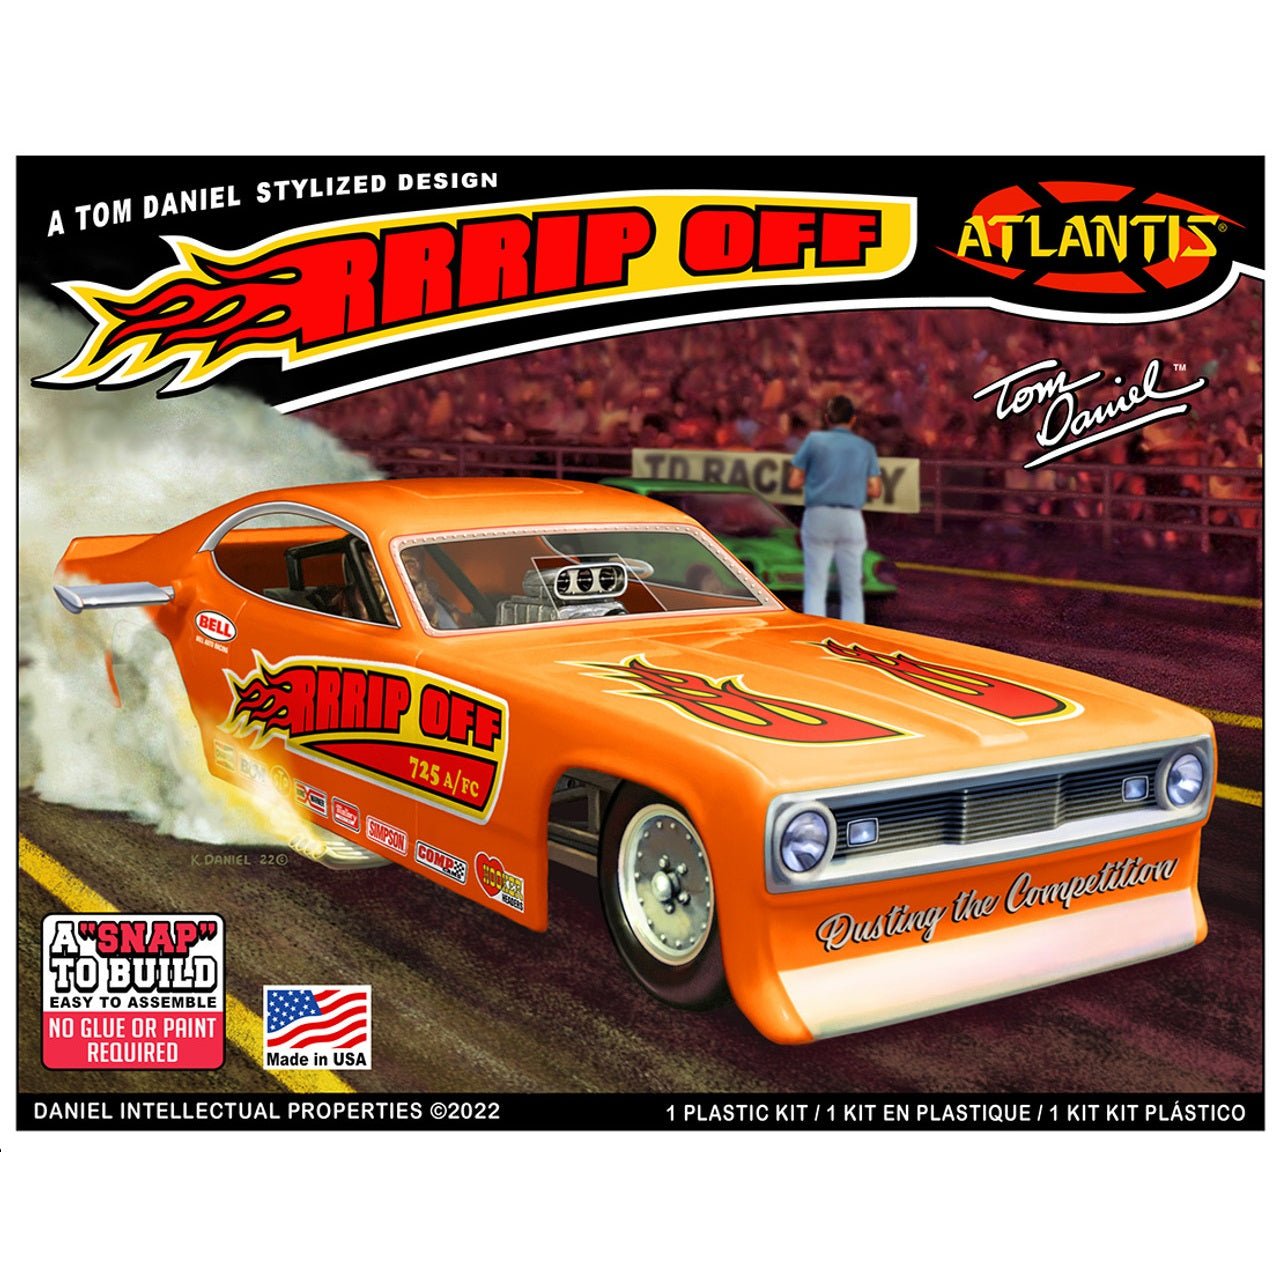 Atlantis® Tom Daniel "RRRip off Funny Car" Plastic Model Kit, 1/32 Scale - Micro - Mark Scale Model Kits